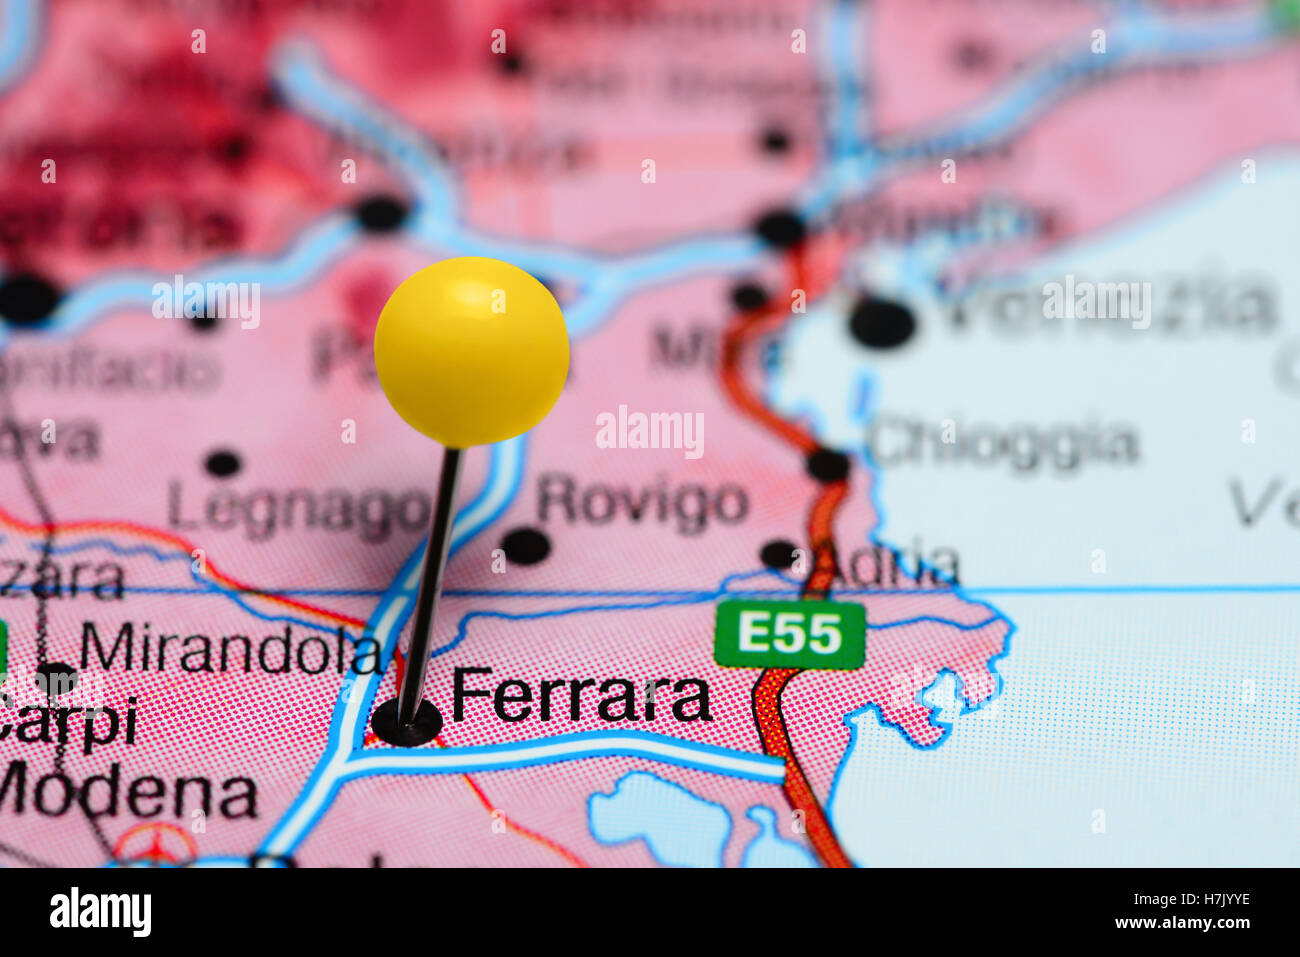 Ferrara pinned on a map of Italy Stock Photo